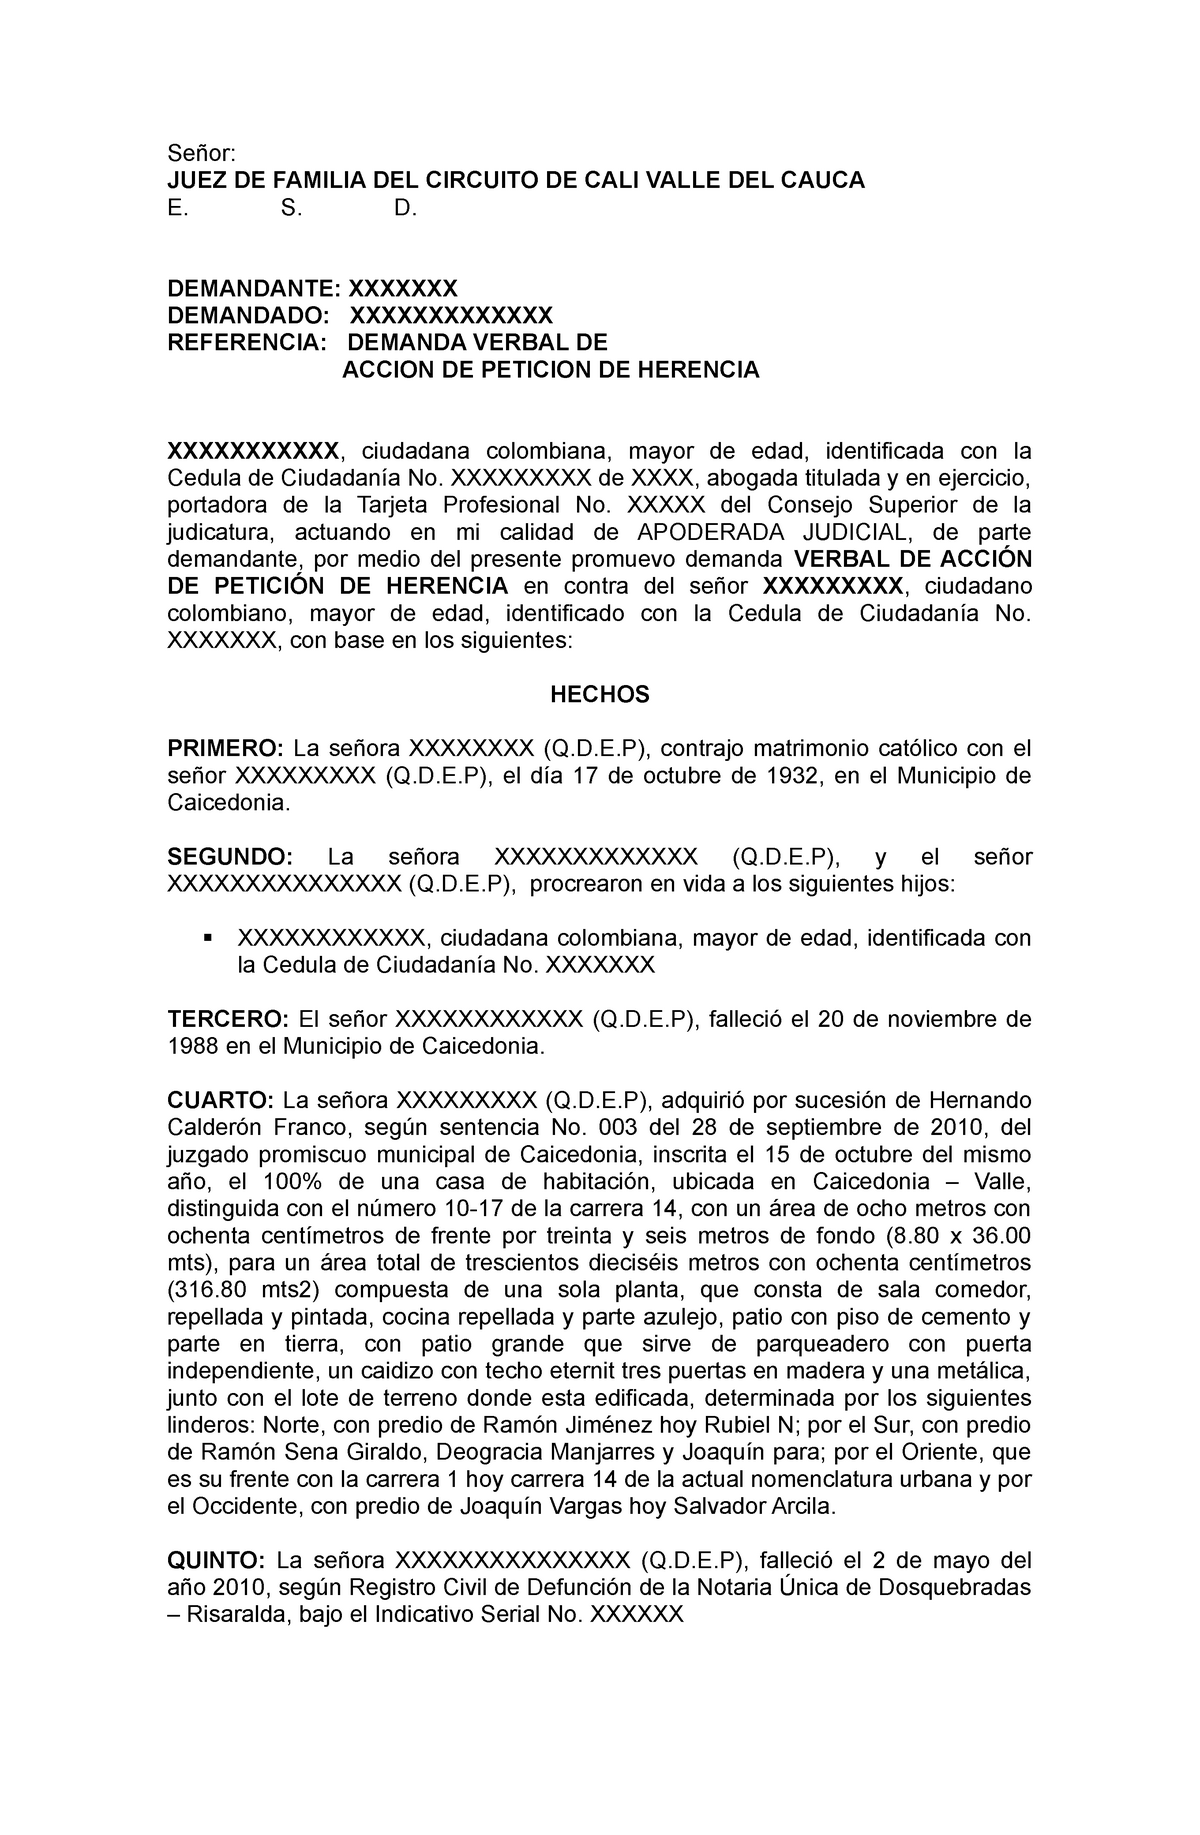 Introducir 83+ imagen modelo de demanda de peticion de herencia en colombia